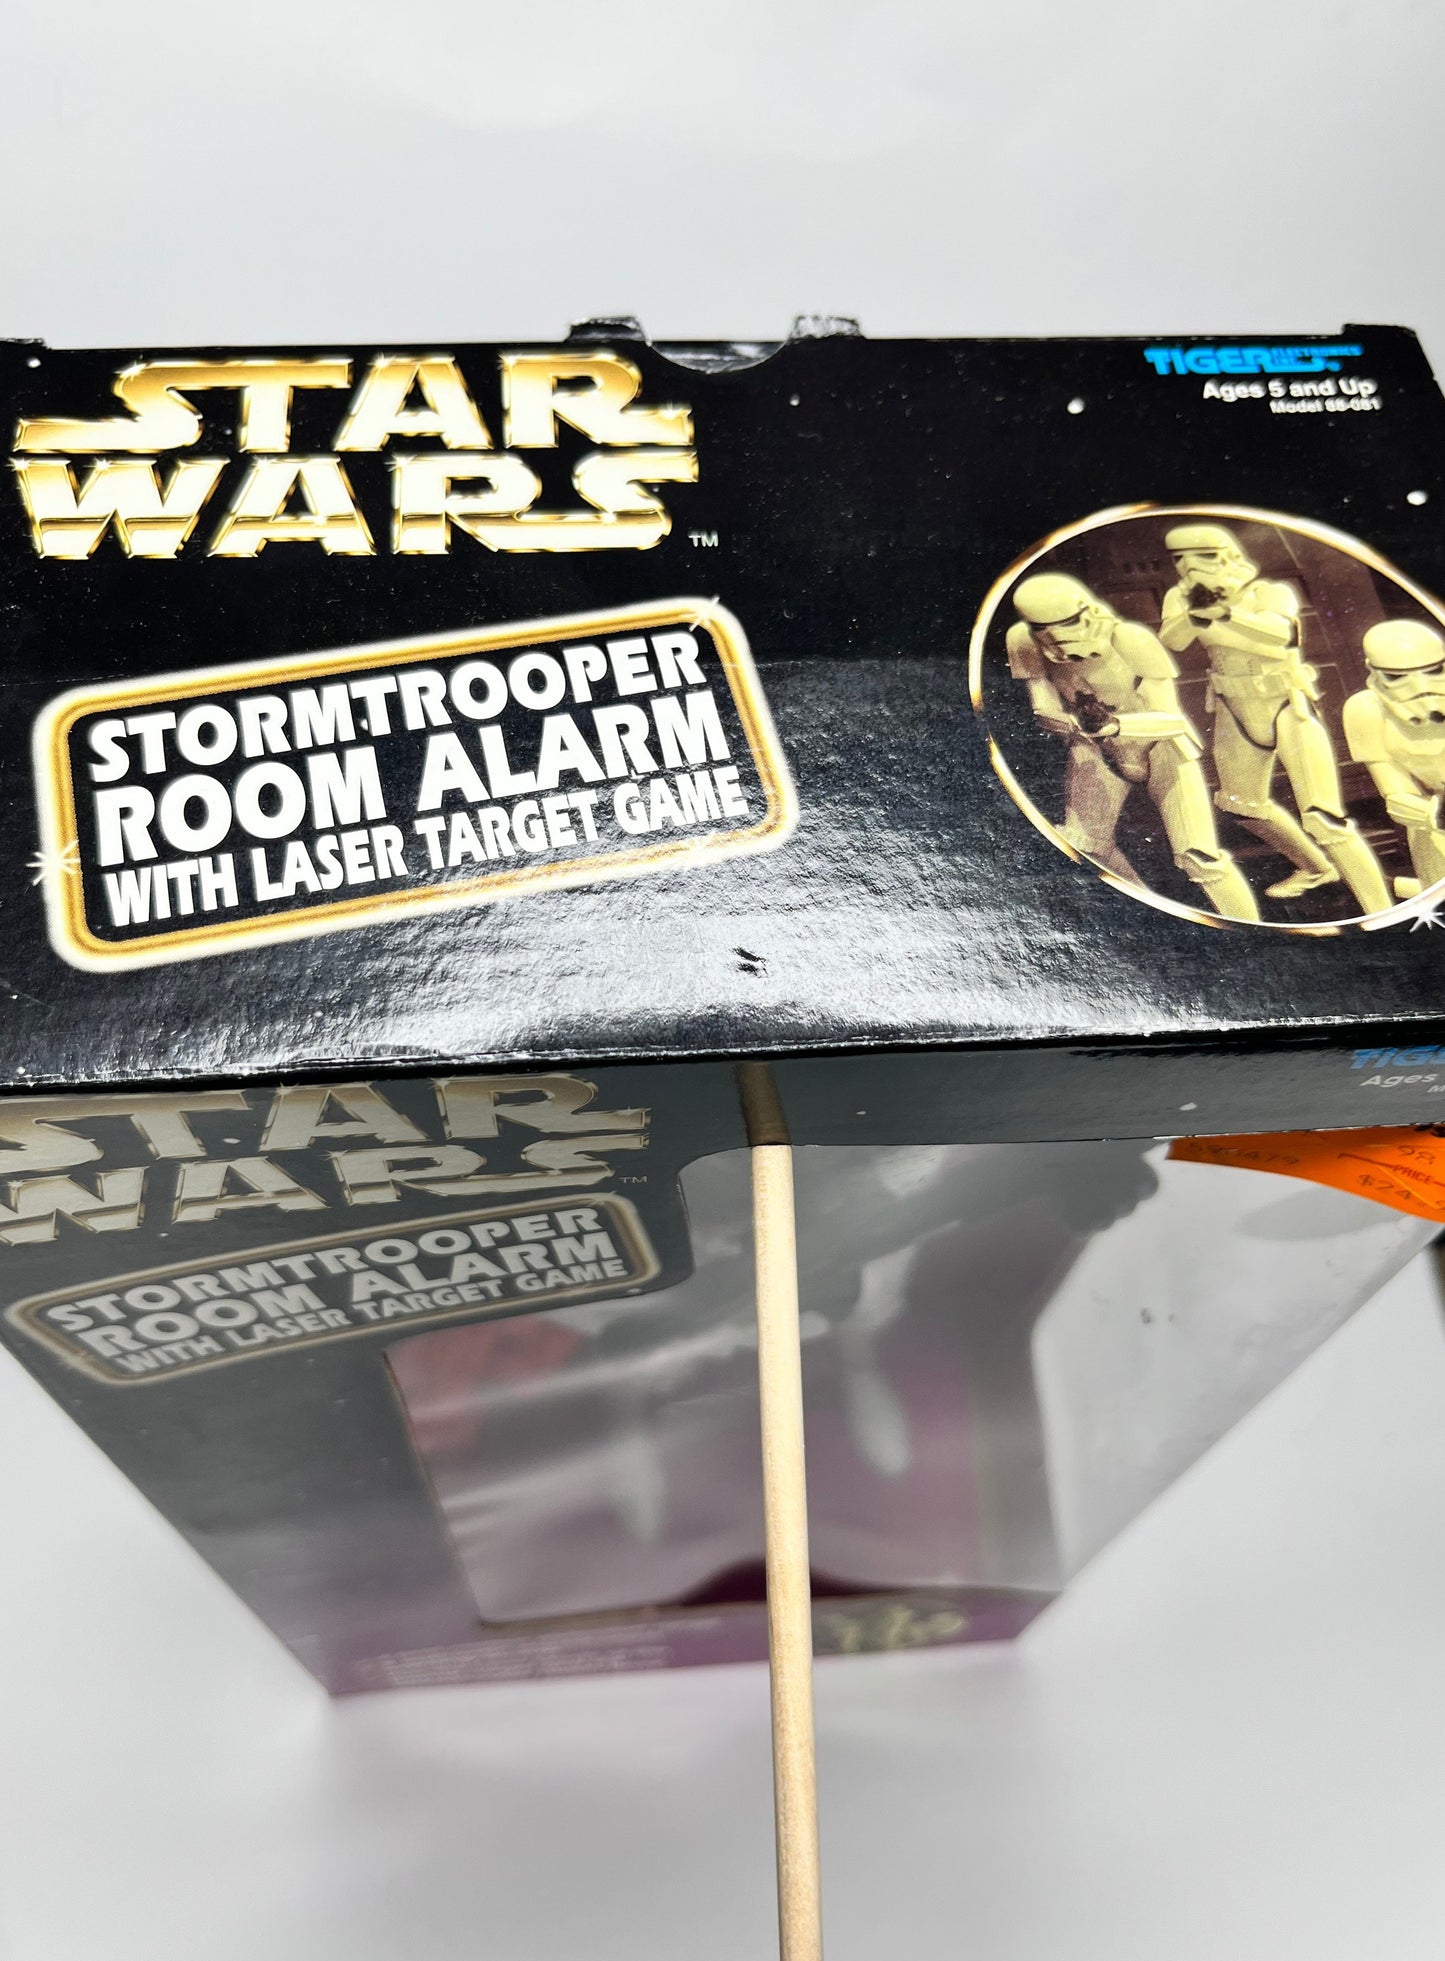 Star Wars Stormtrooper Room Alarm w/ Laser Target Game